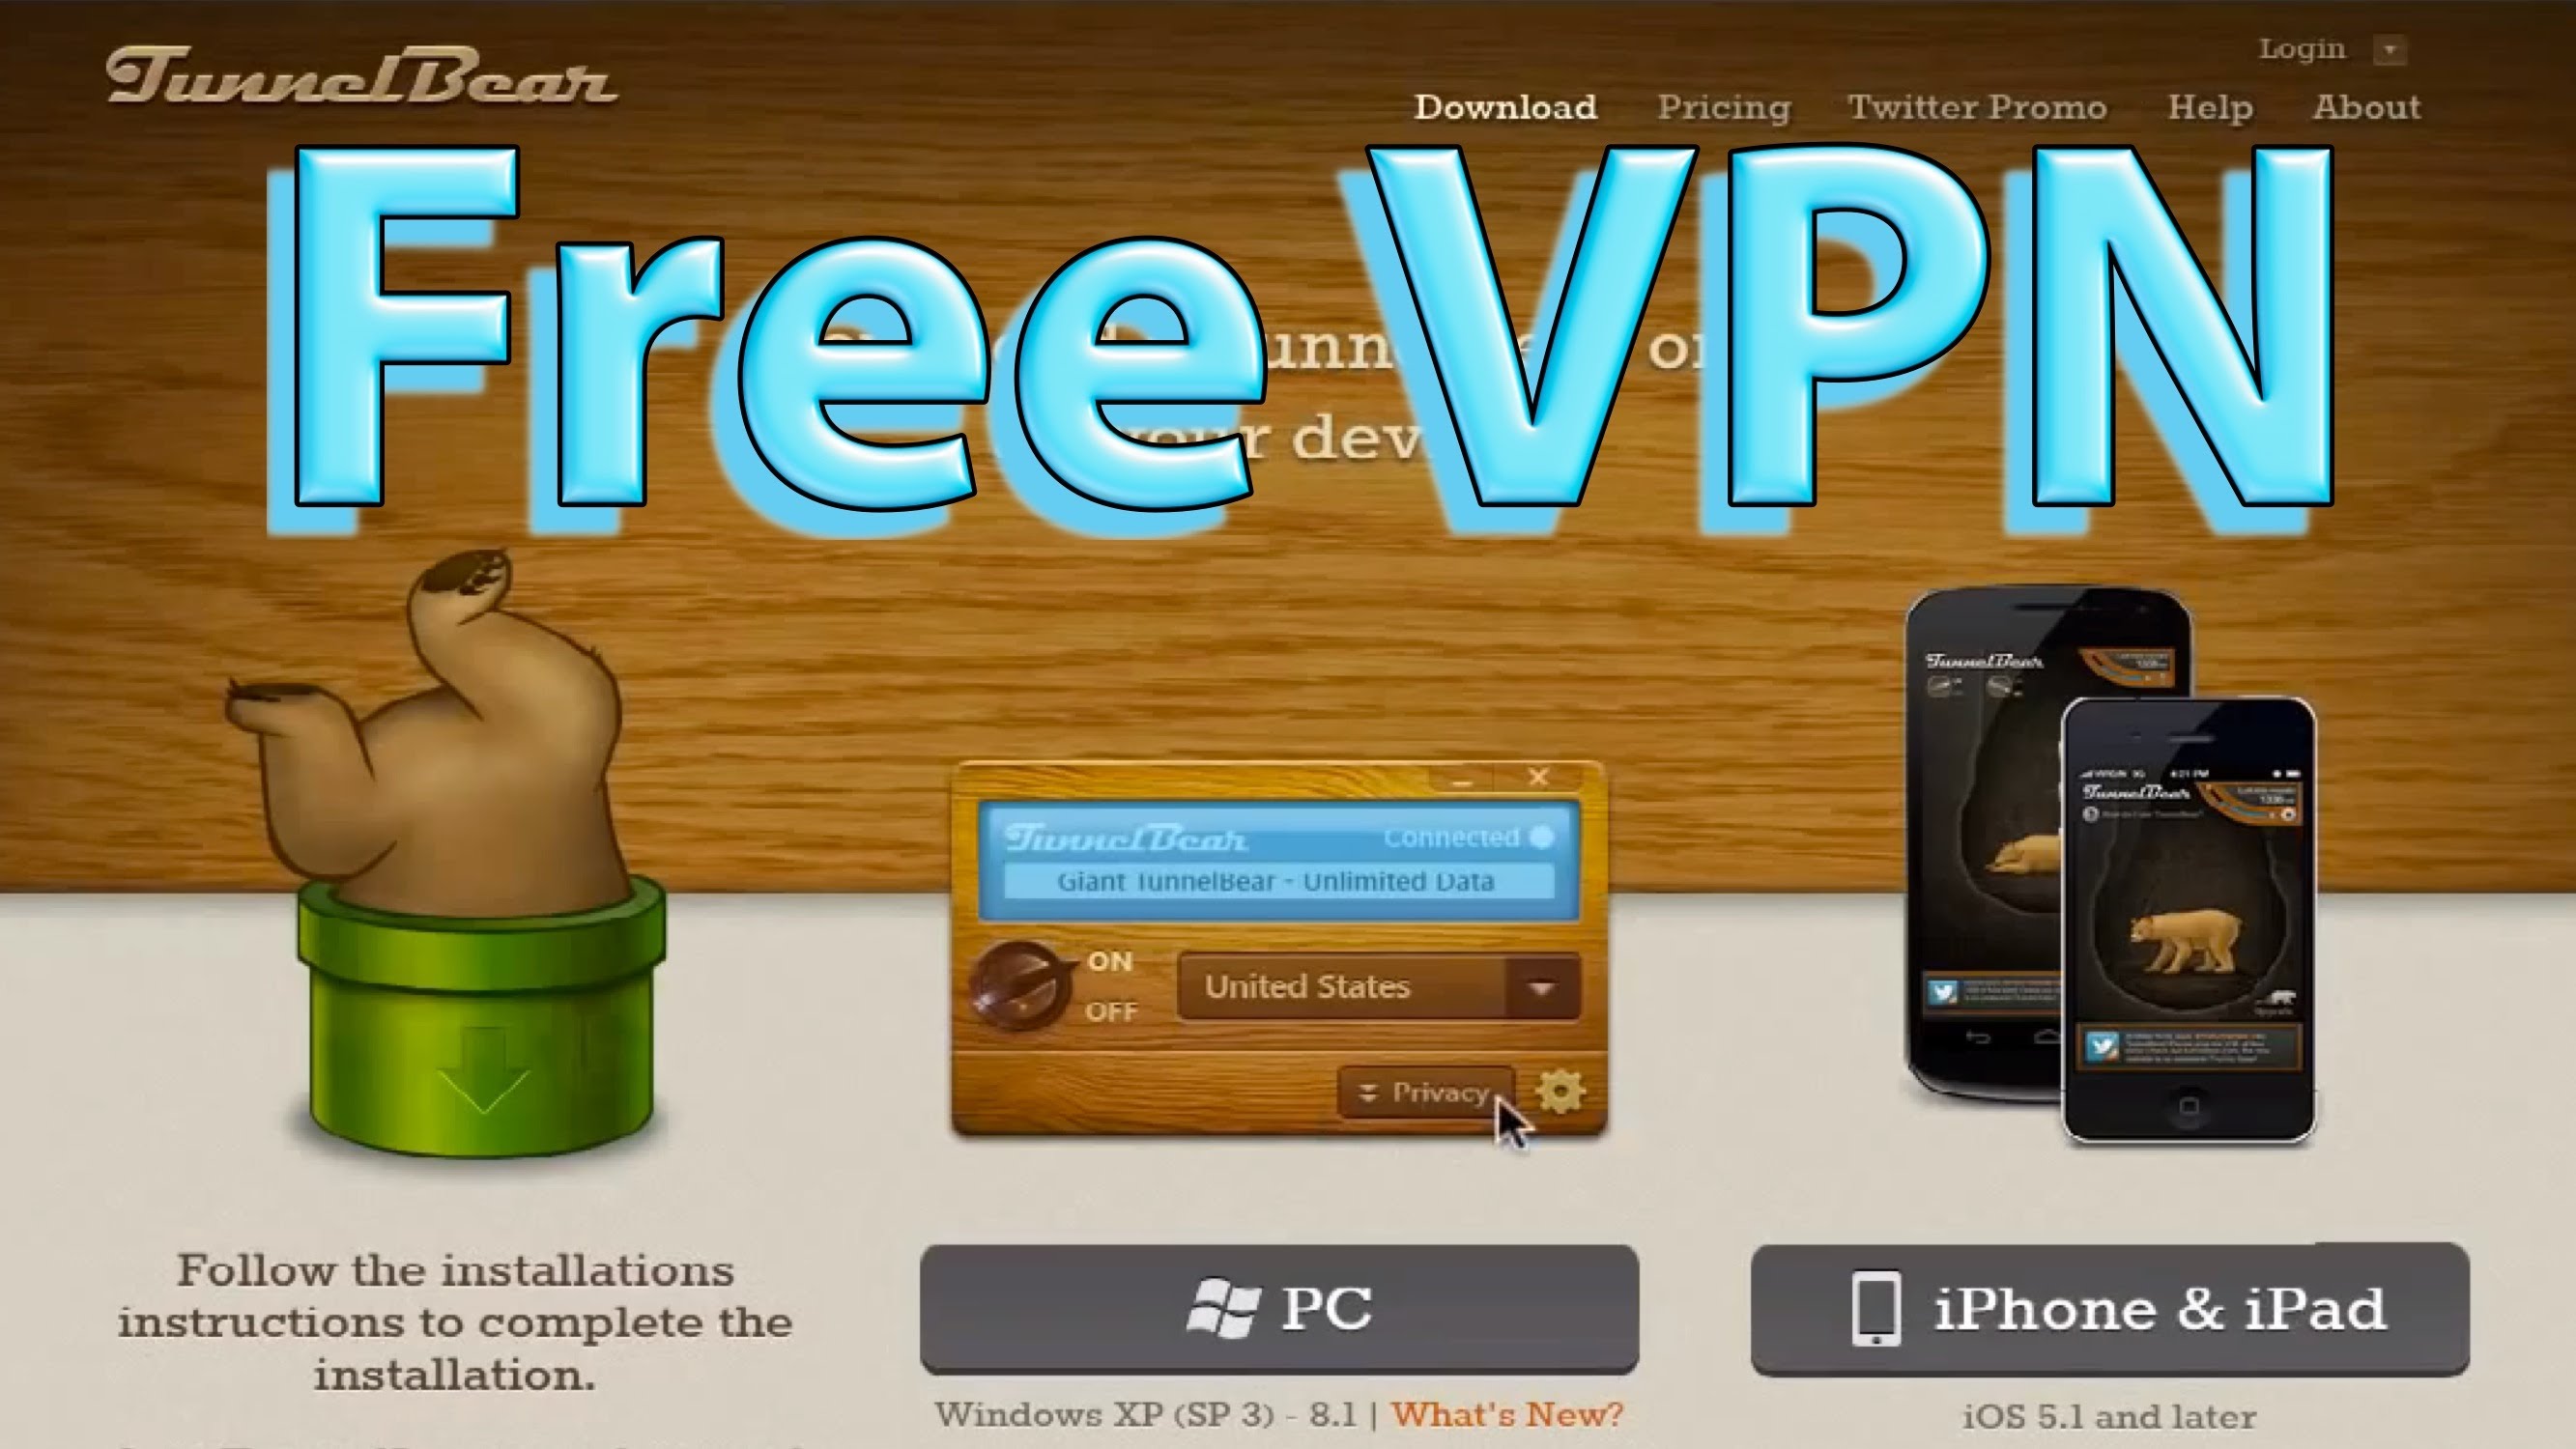 browser vpn free